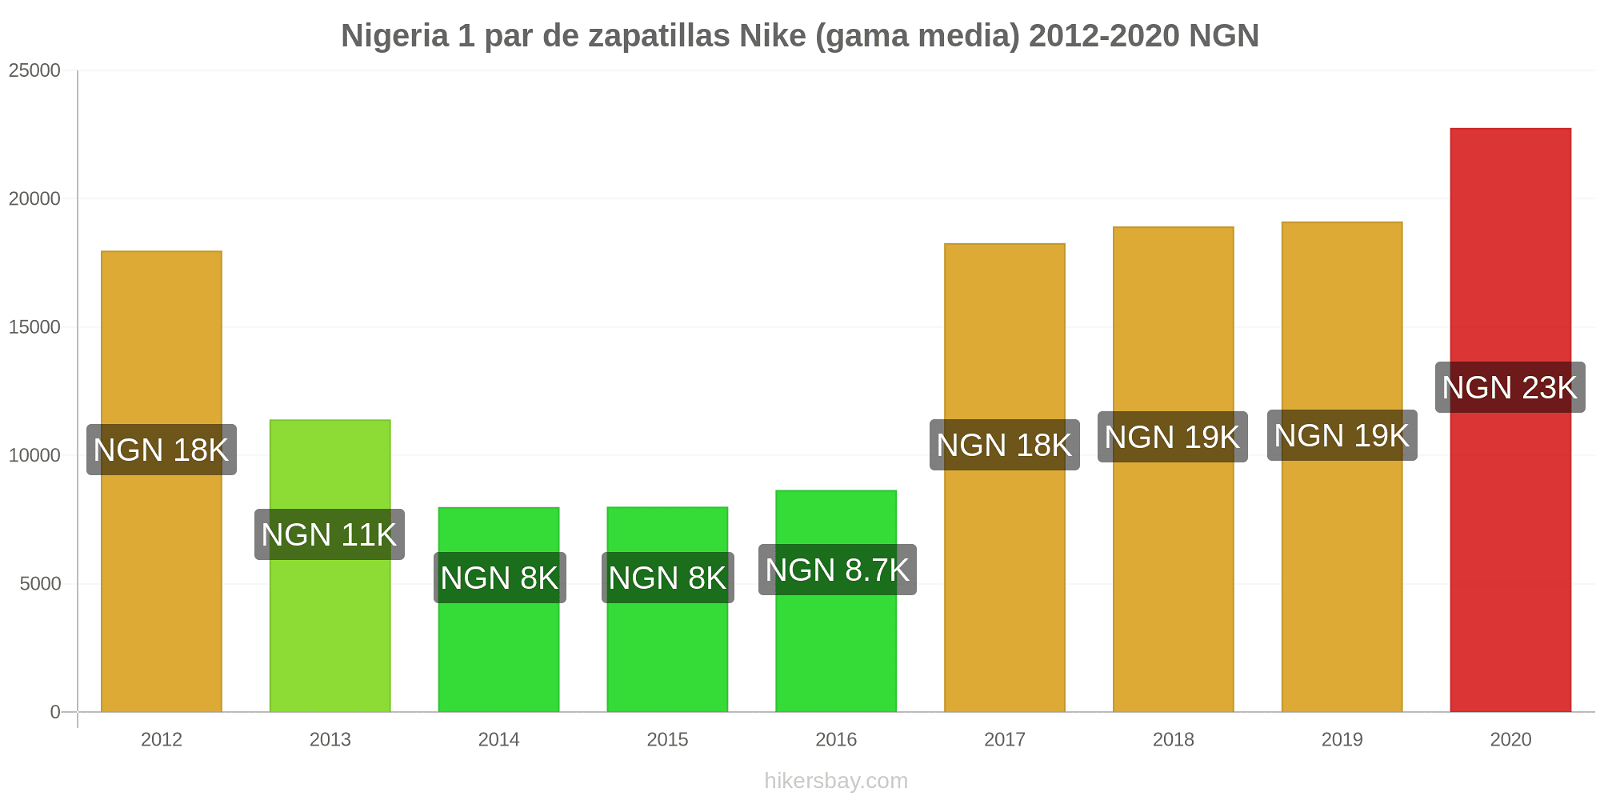 Nigeria cambios de precios 1 par de zapatillas Nike (gama media) hikersbay.com